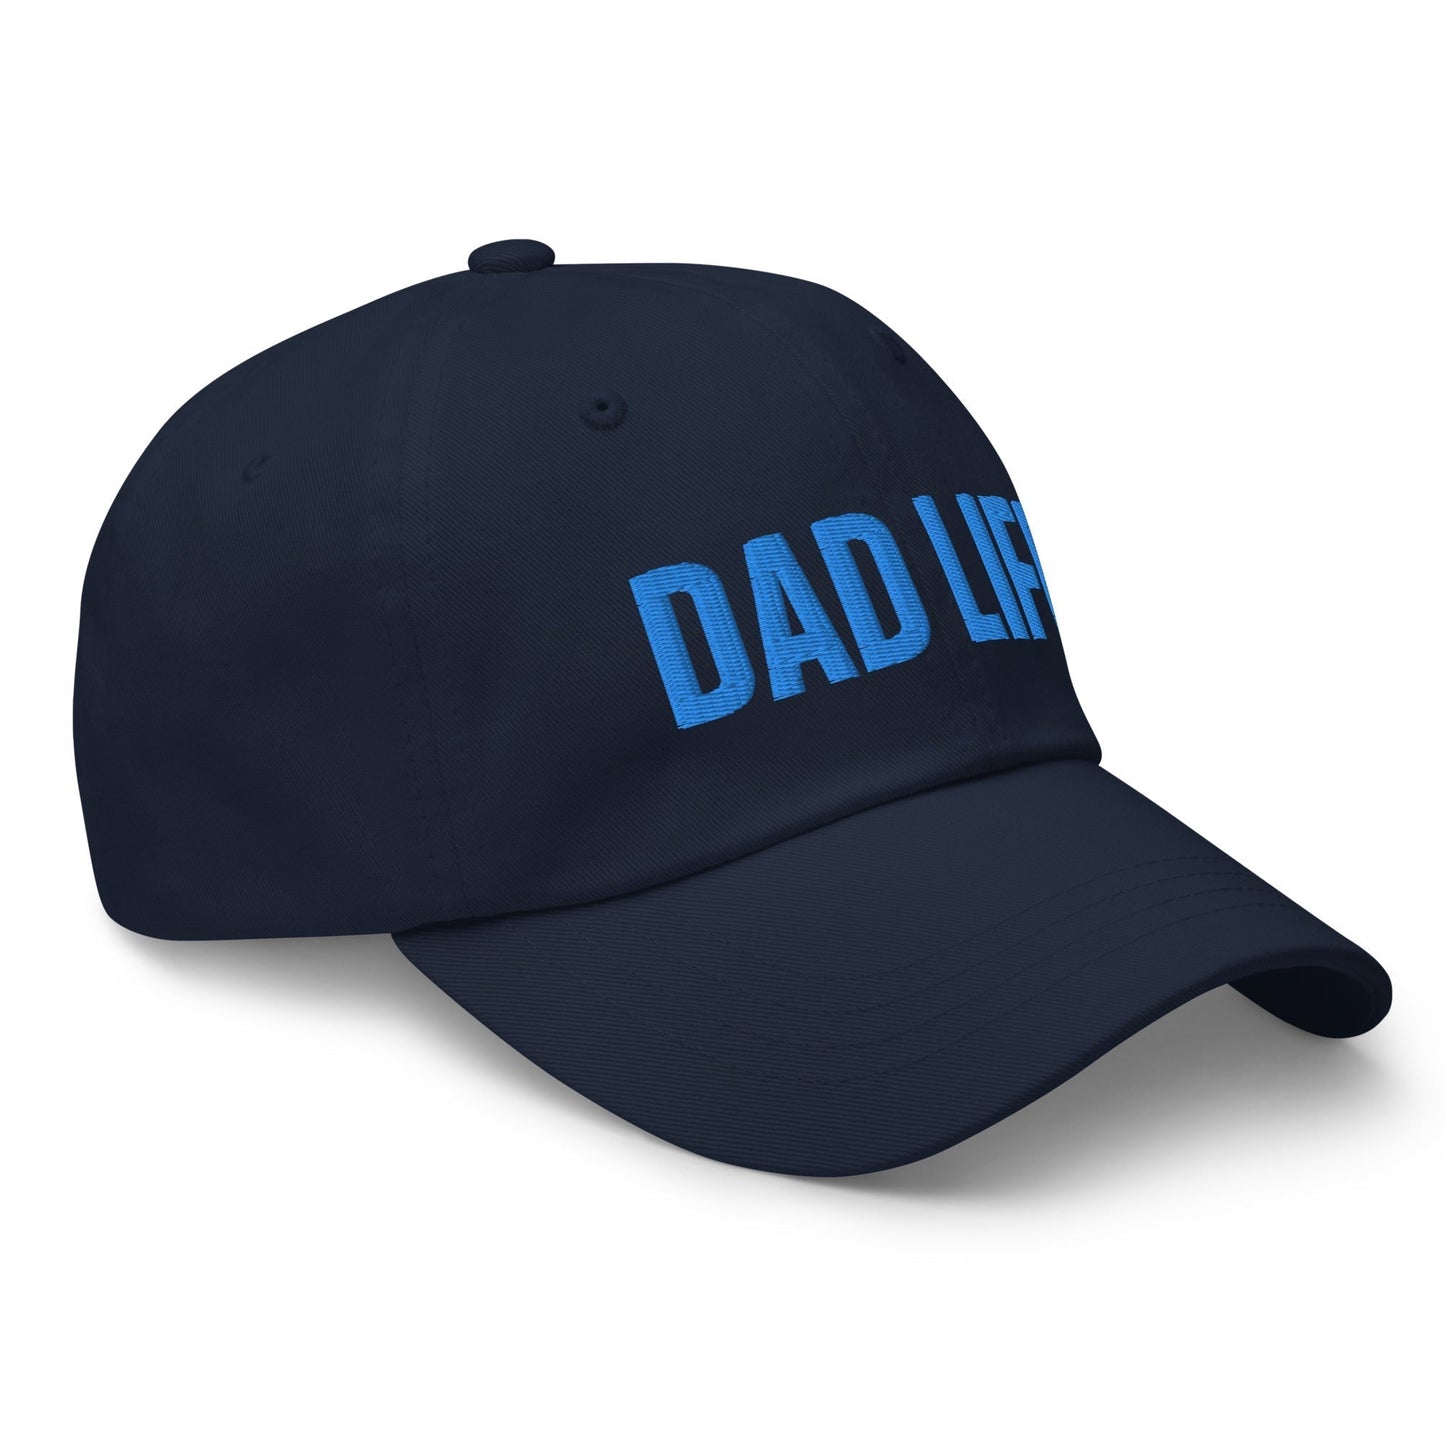 DAD LIFE | Dad hat